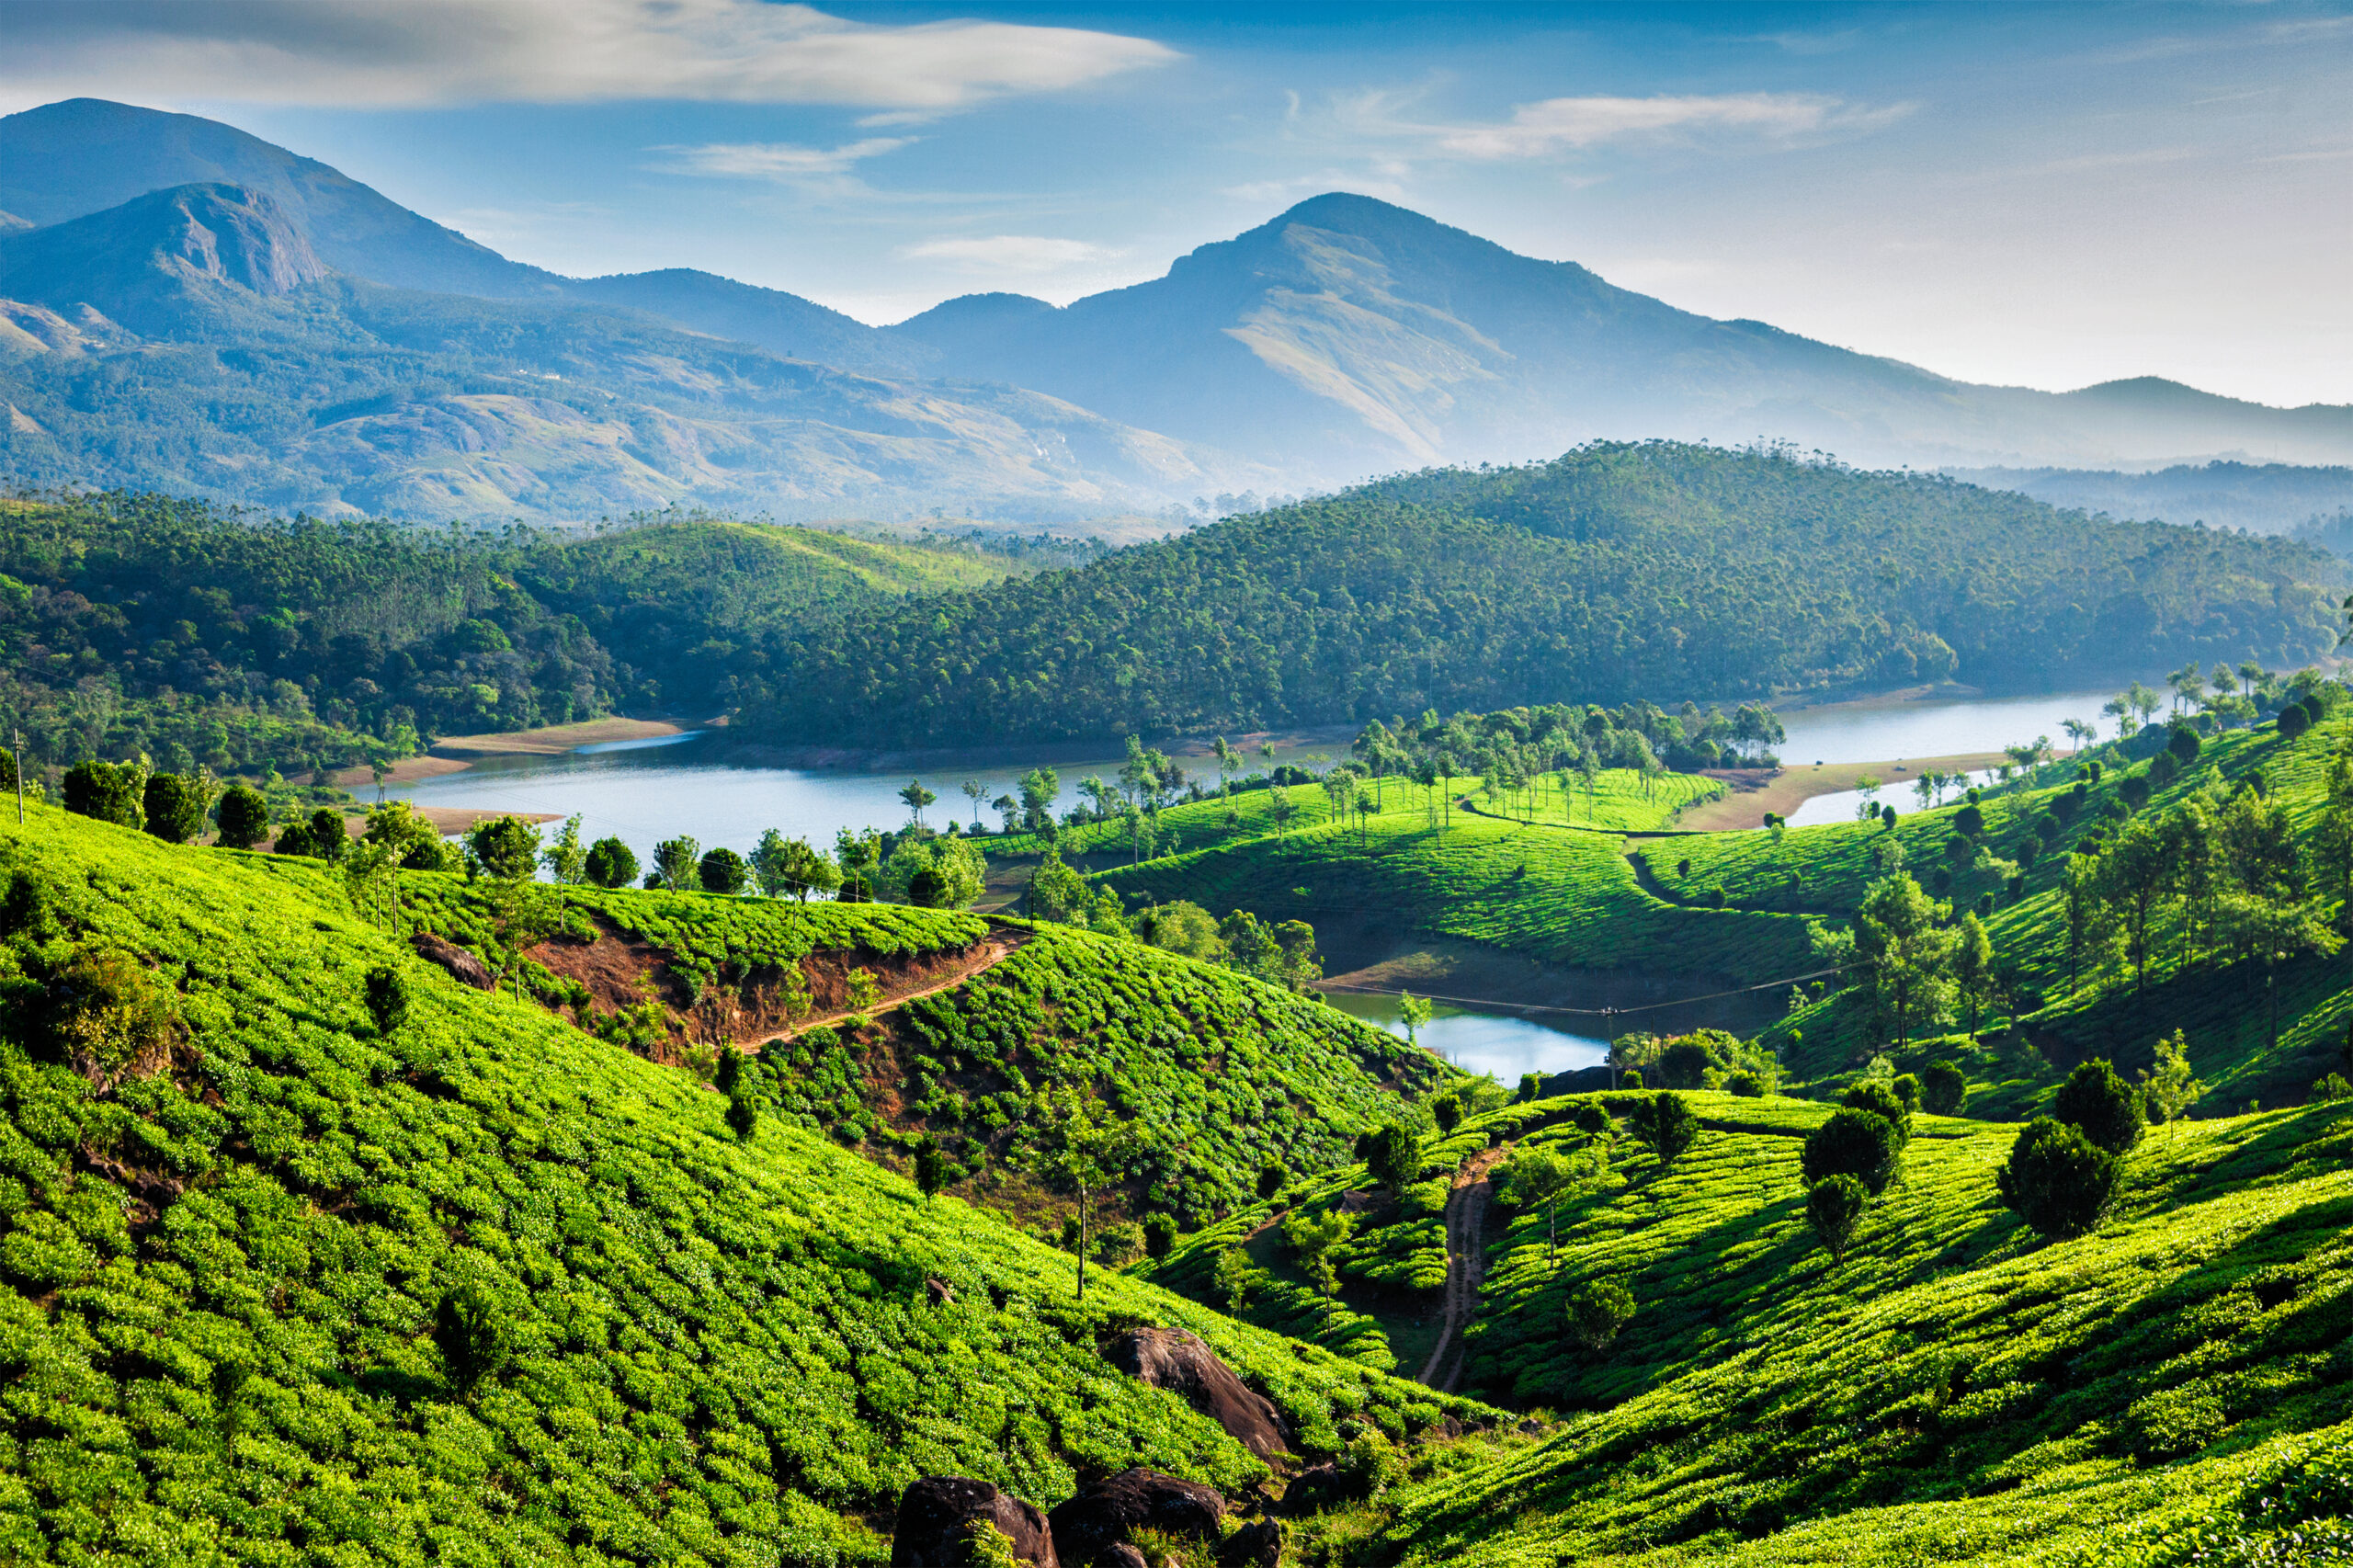 Munnar Tea plantations and river in hills. Kerala, India